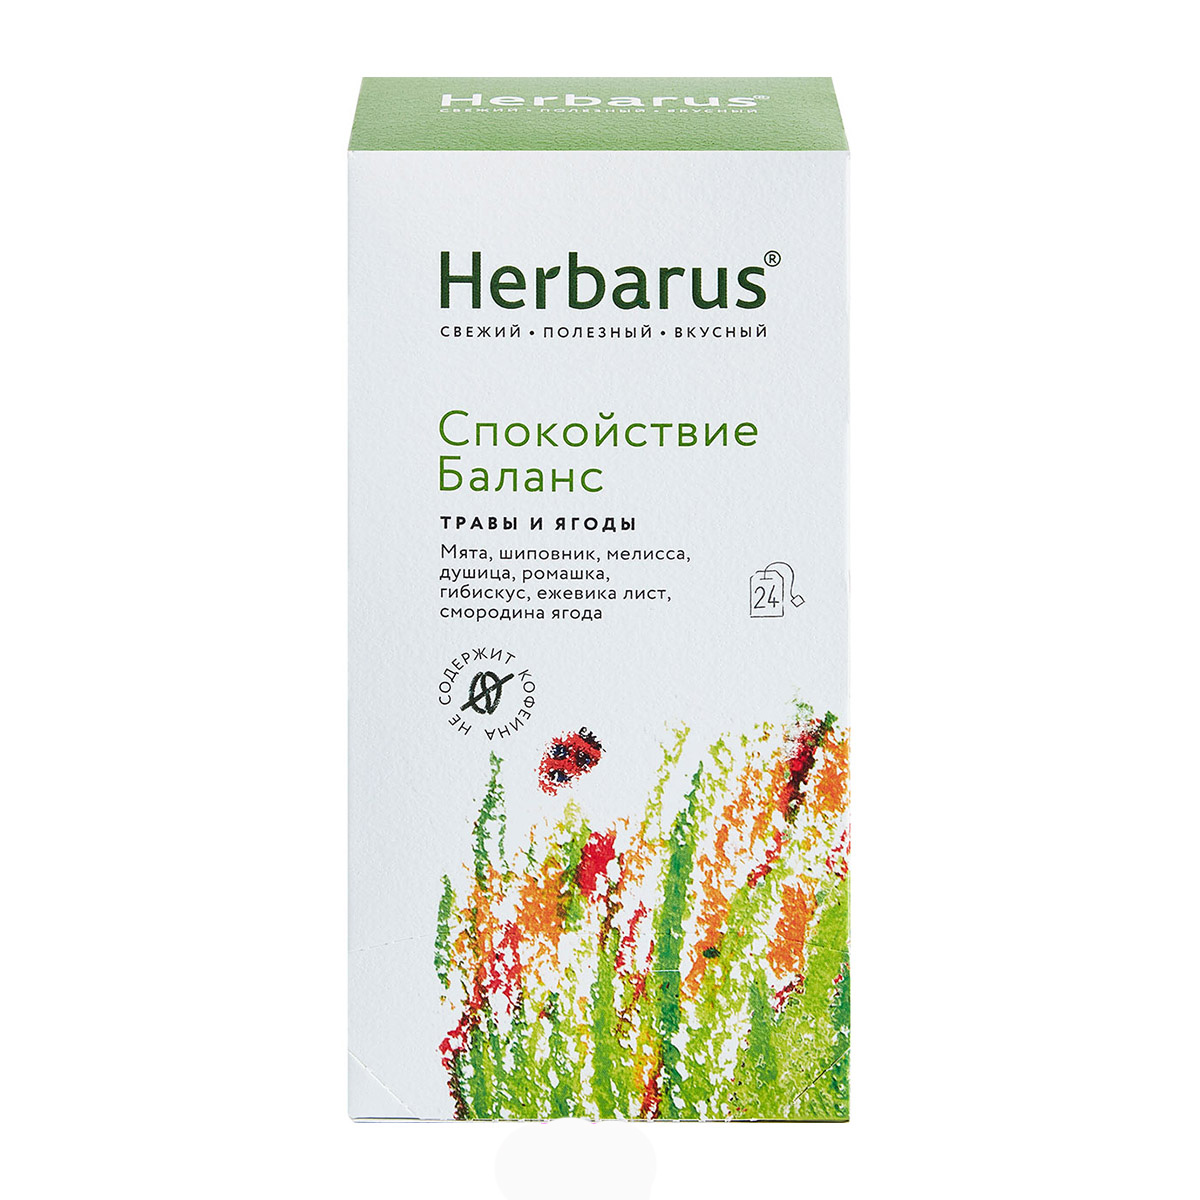 Herbarus Чайный напиток Спокойствие и баланс, 24 шт х 1,8 г (Herbarus, Травы и ягоды) чайный напиток herbarus имбирная энергия 50 г